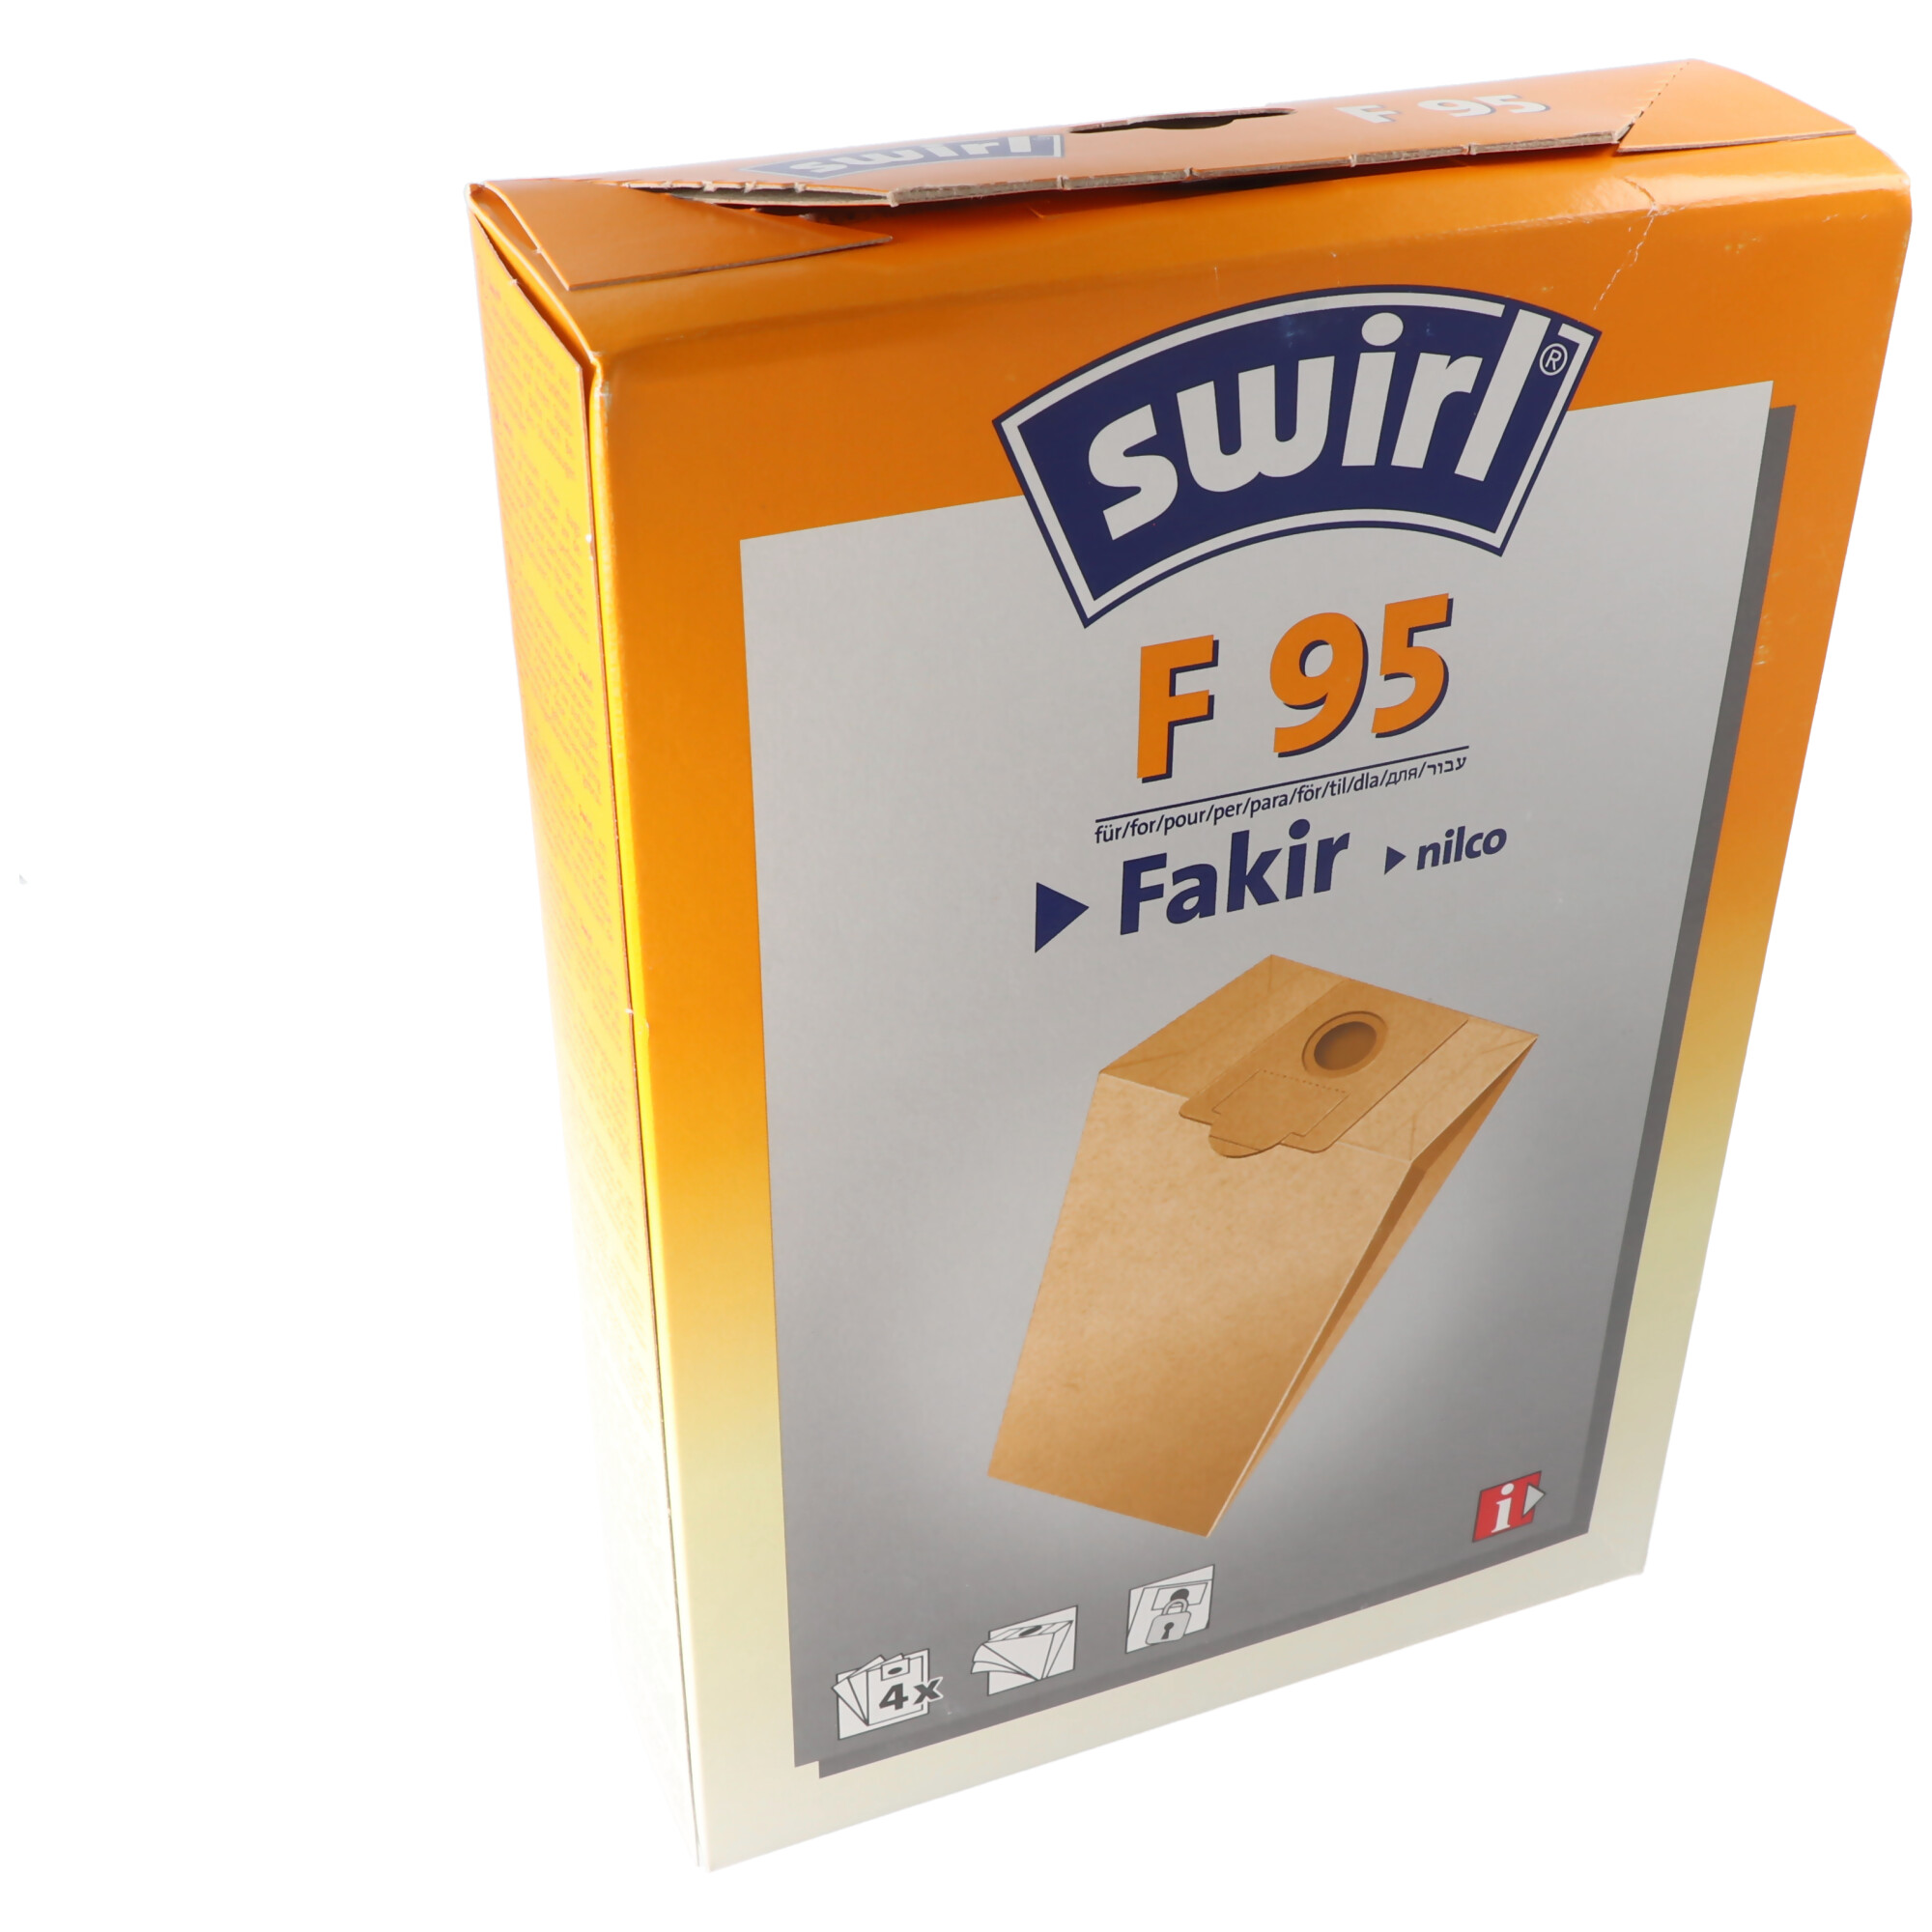 Swirl Staubsaugerbeutel F95 Classic aus Spezialpapier für Fakir und nilco Staubsauger